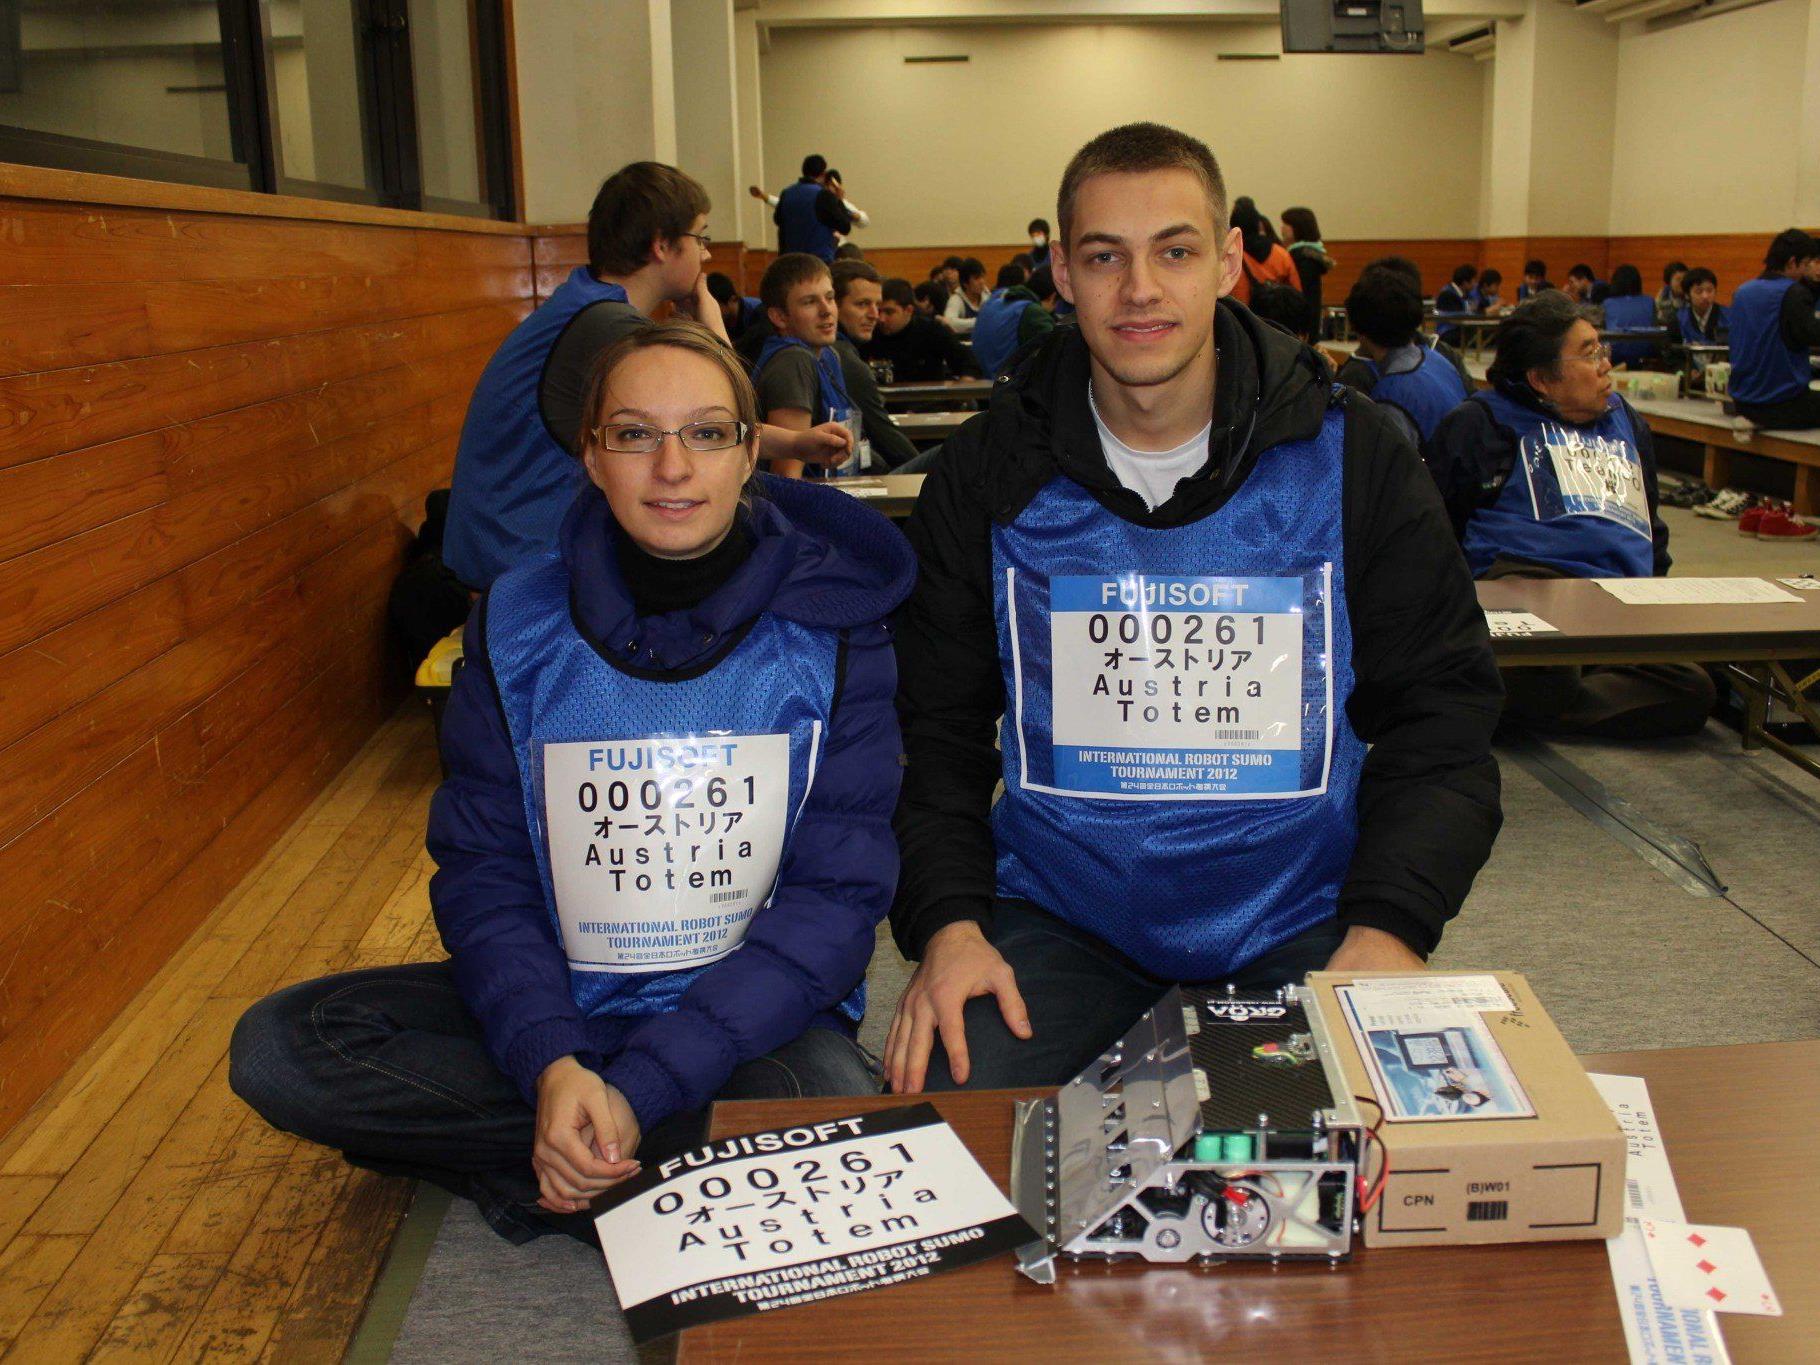 Ana und Andrej Rudovic mit dem selbstgebauten Roboter "Pilot" vor dem Wettkampf in Tokyo.